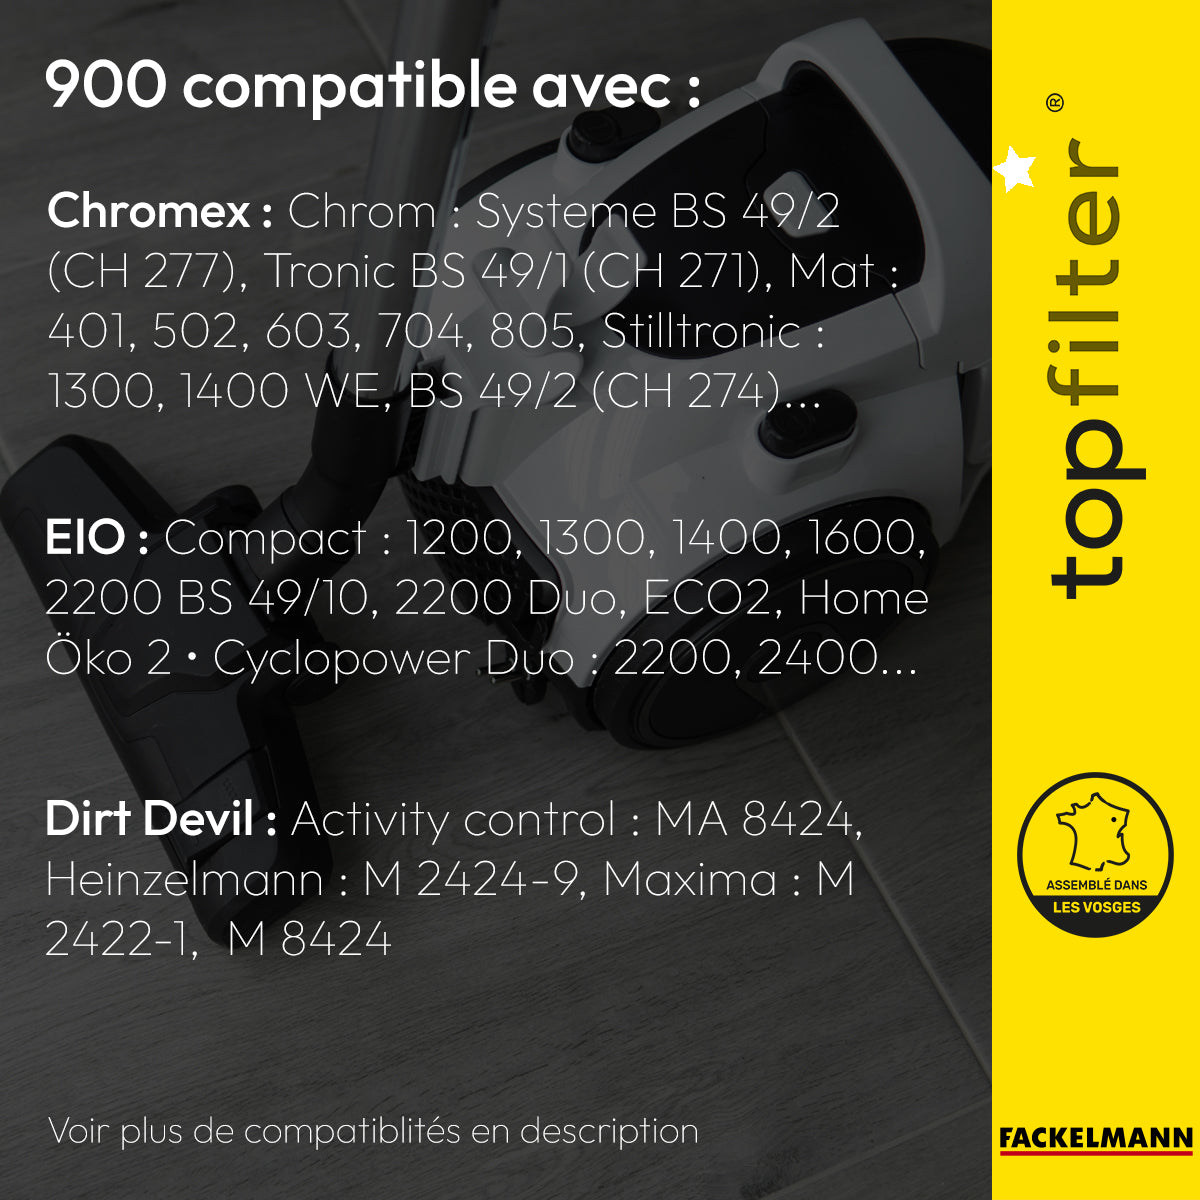 Lot de 4 sacs aspirateur pour EIO et Chromex TopFilter Premium